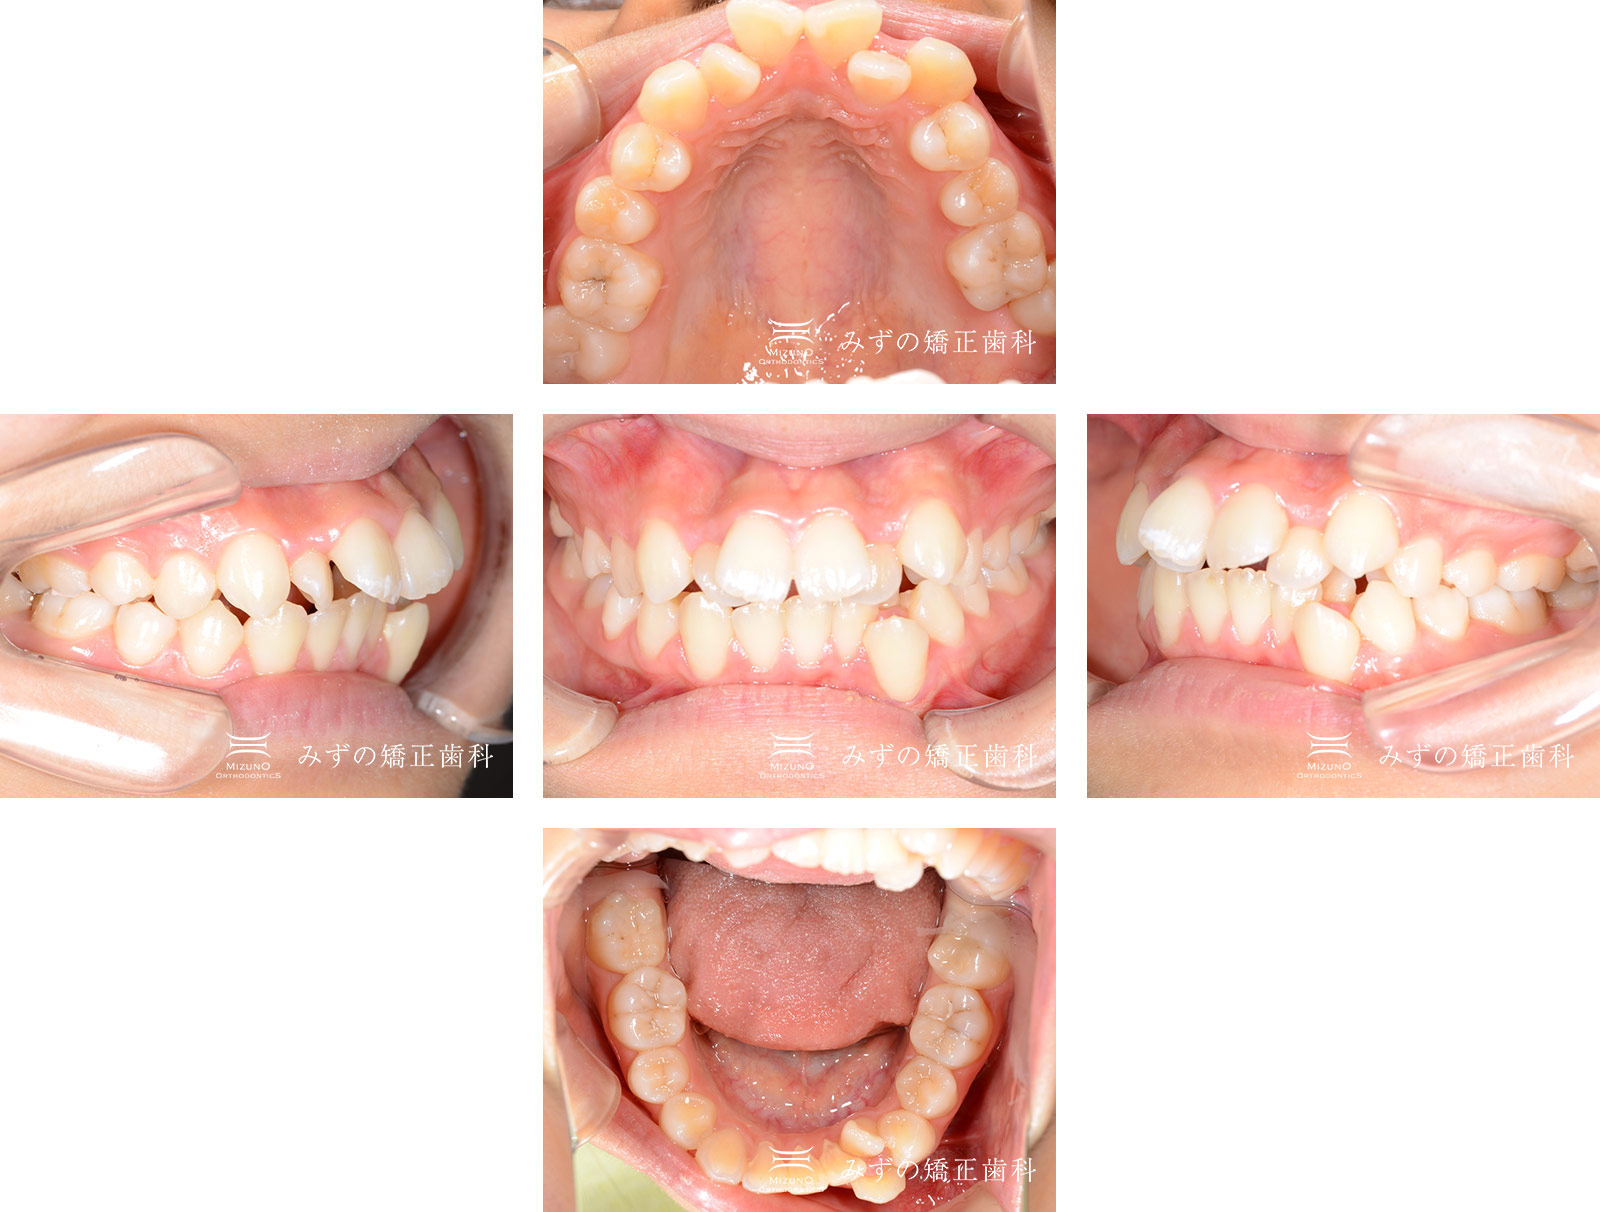 ガタガタの歯 症例画像